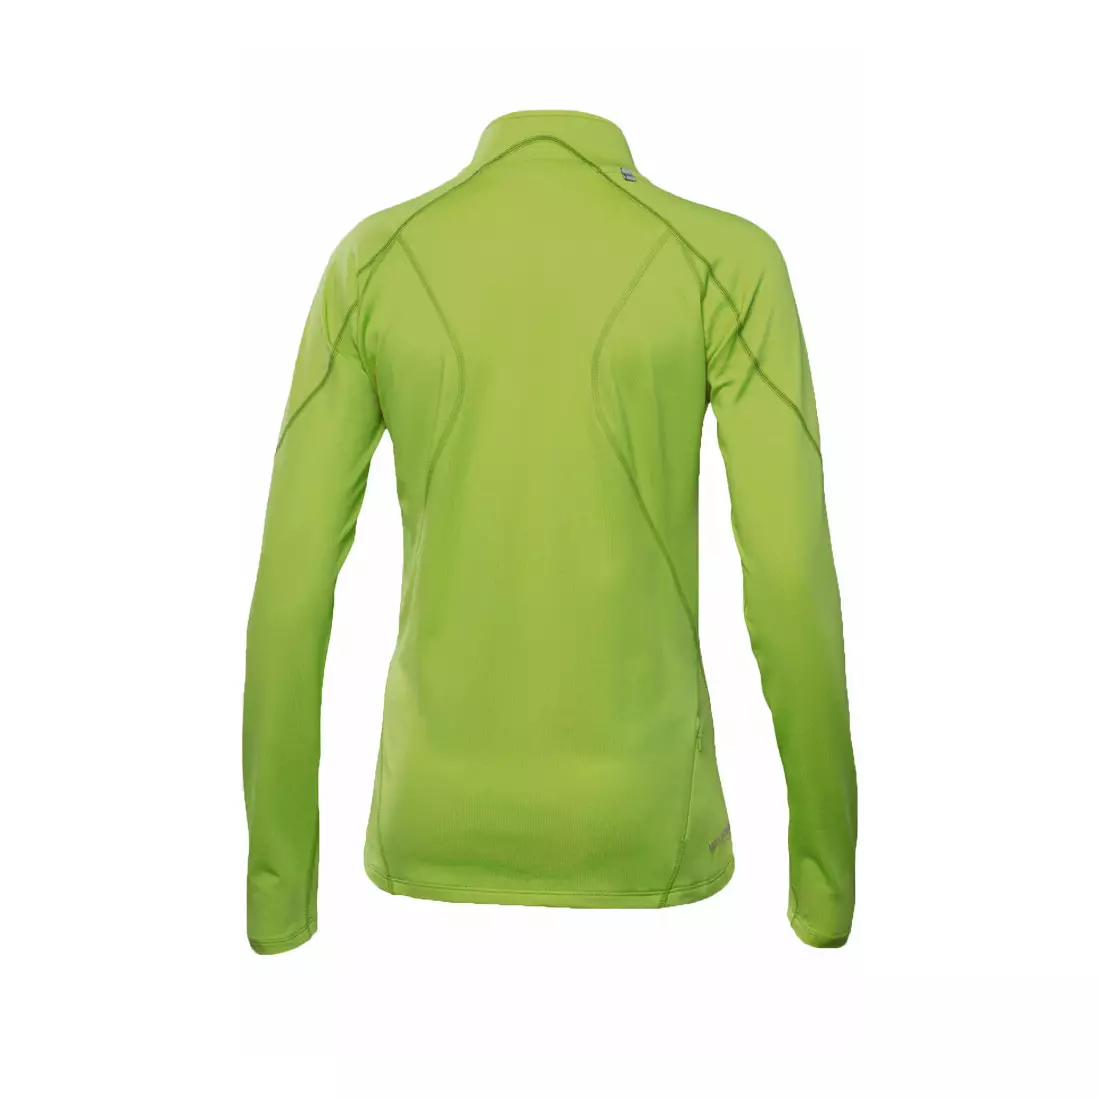 ASICS RUN 109746-0496 – Damen-Sweatshirt, Farbe: Grün